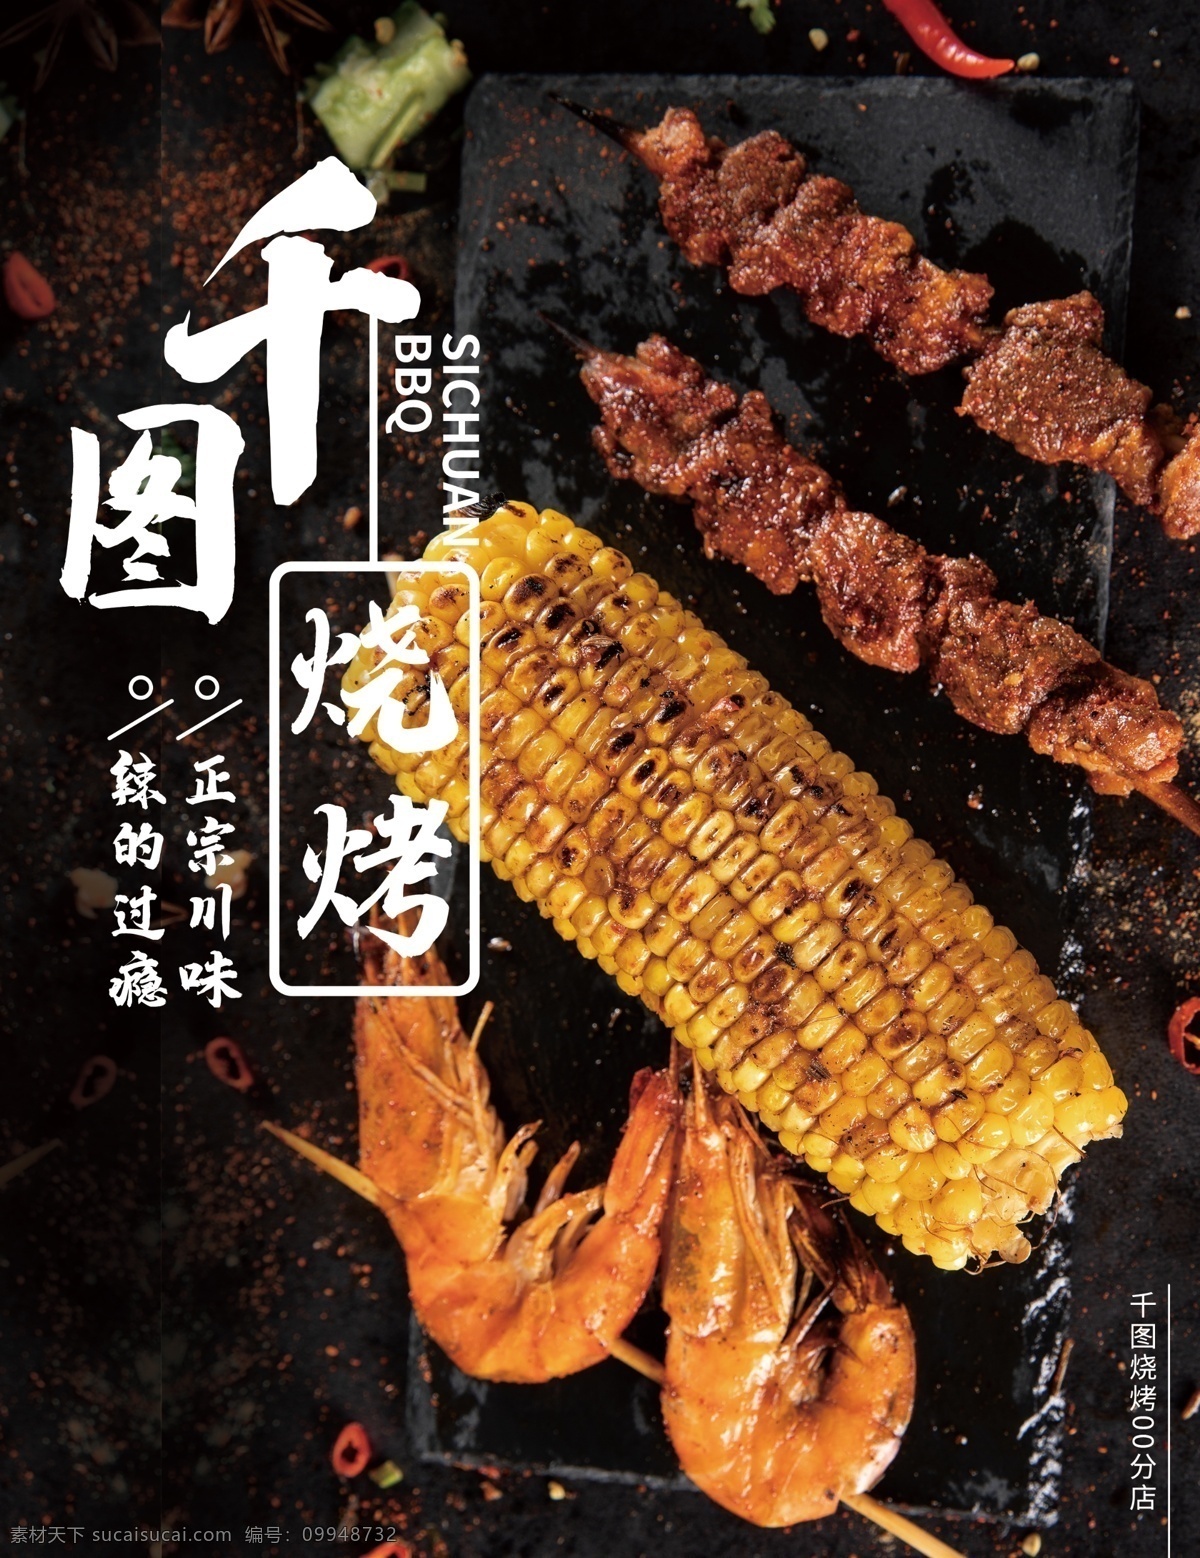 烧烤 烤串 菜单 烤玉米 烤虾 羊肉串 菜单设计 菜谱